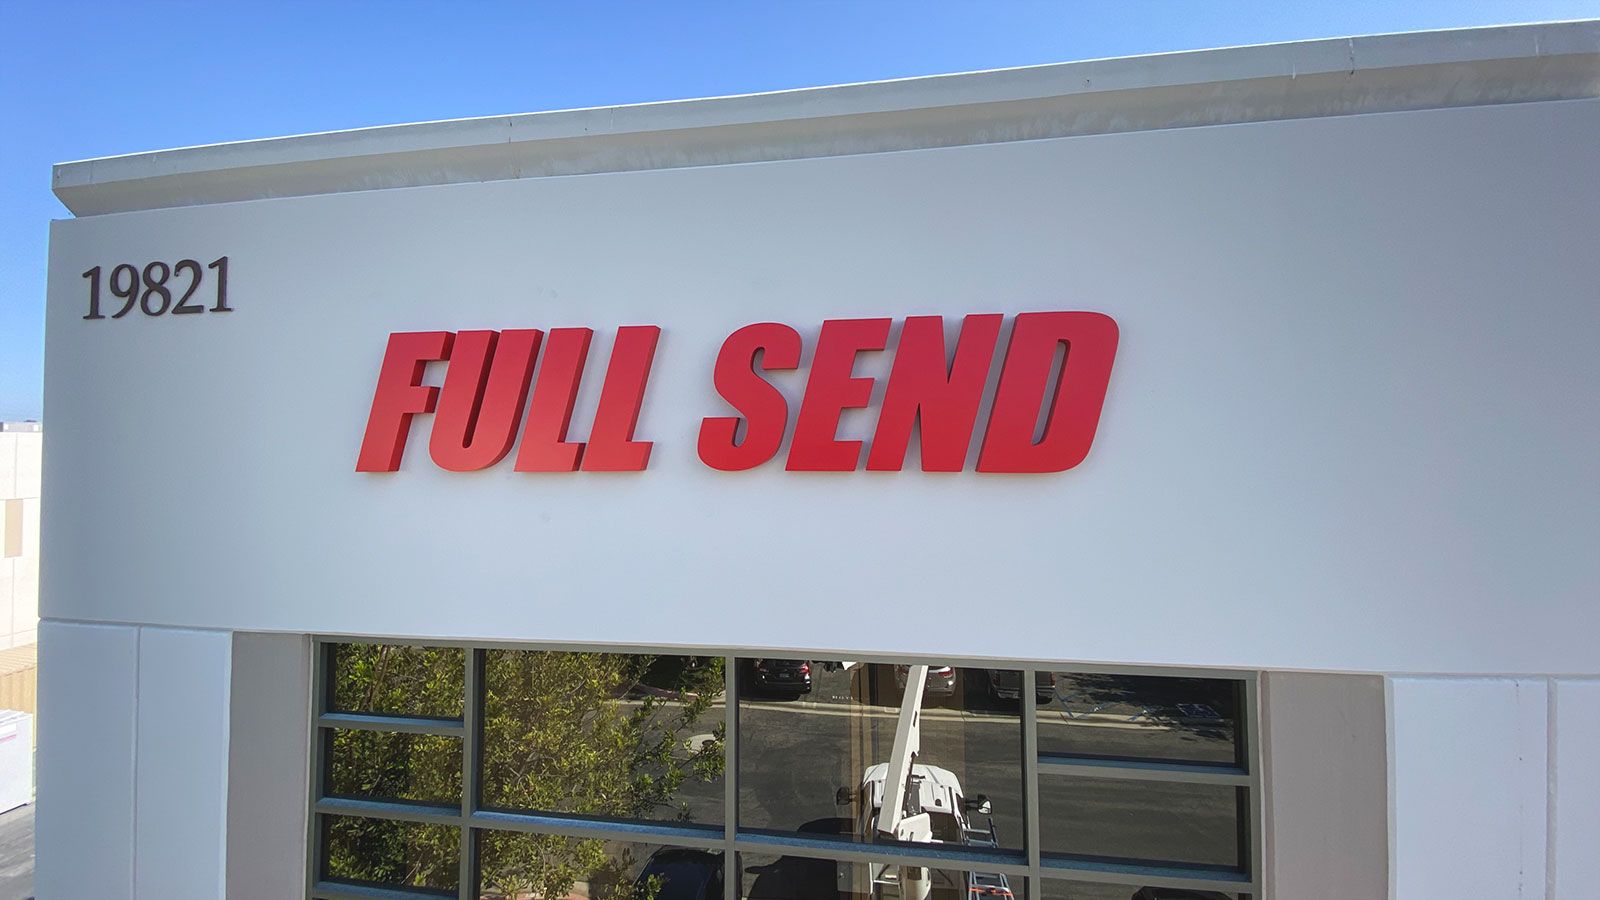 Full Send 3D letters